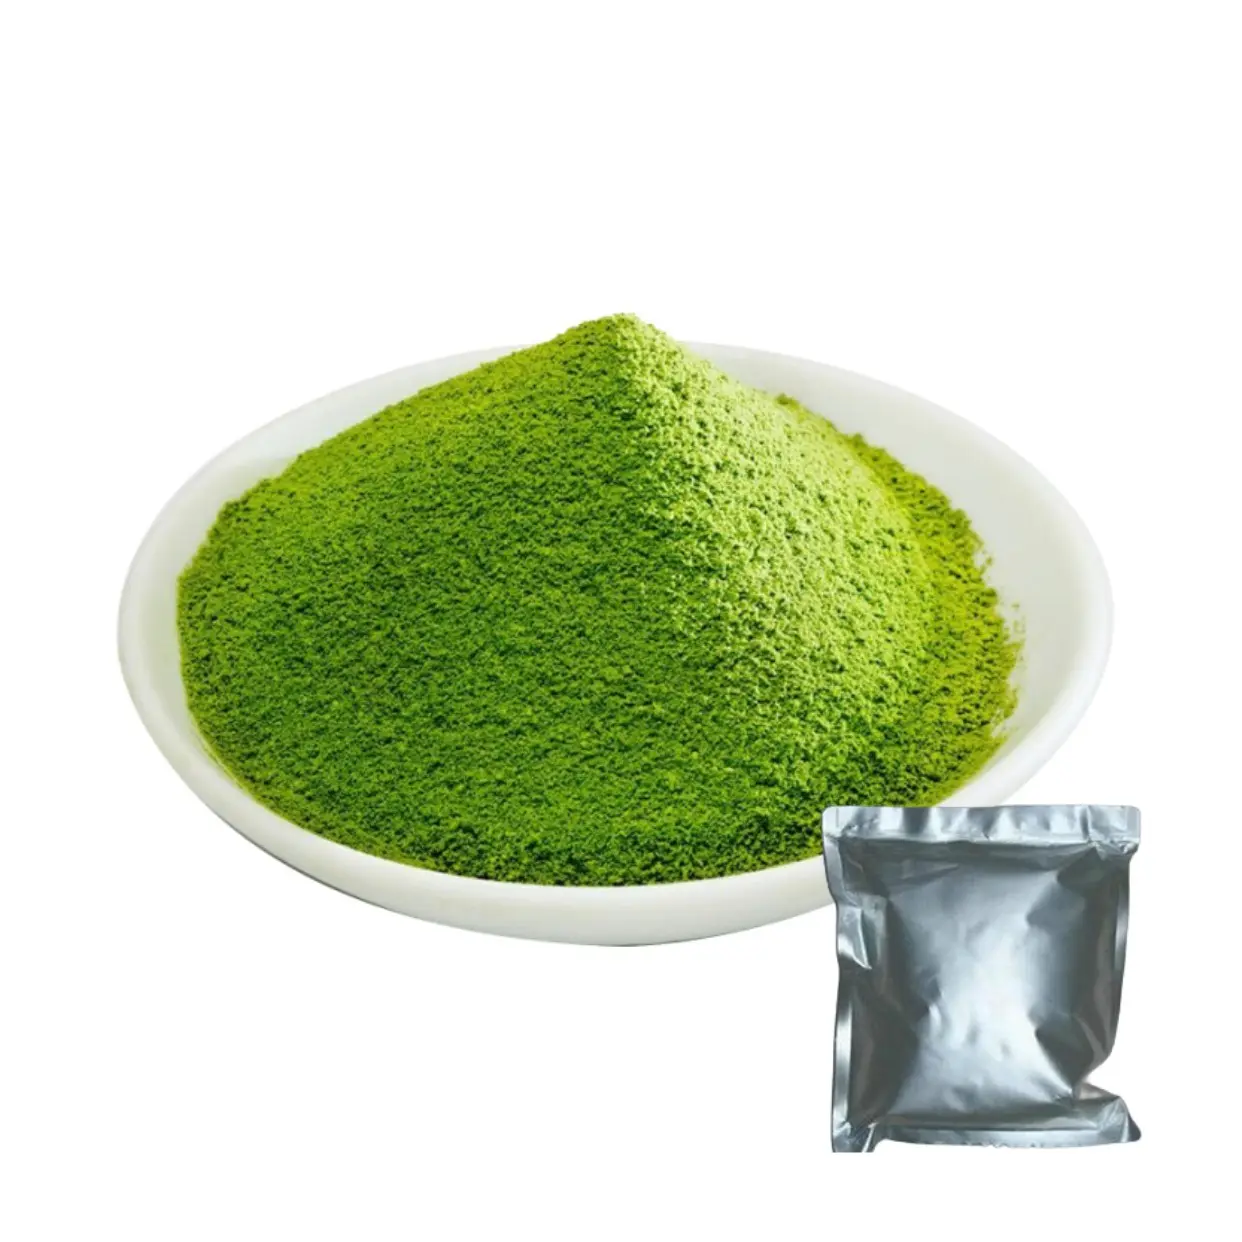 USDA органический церемониальный порошок зеленого чая Matcha порошок Matcha зеленый чай